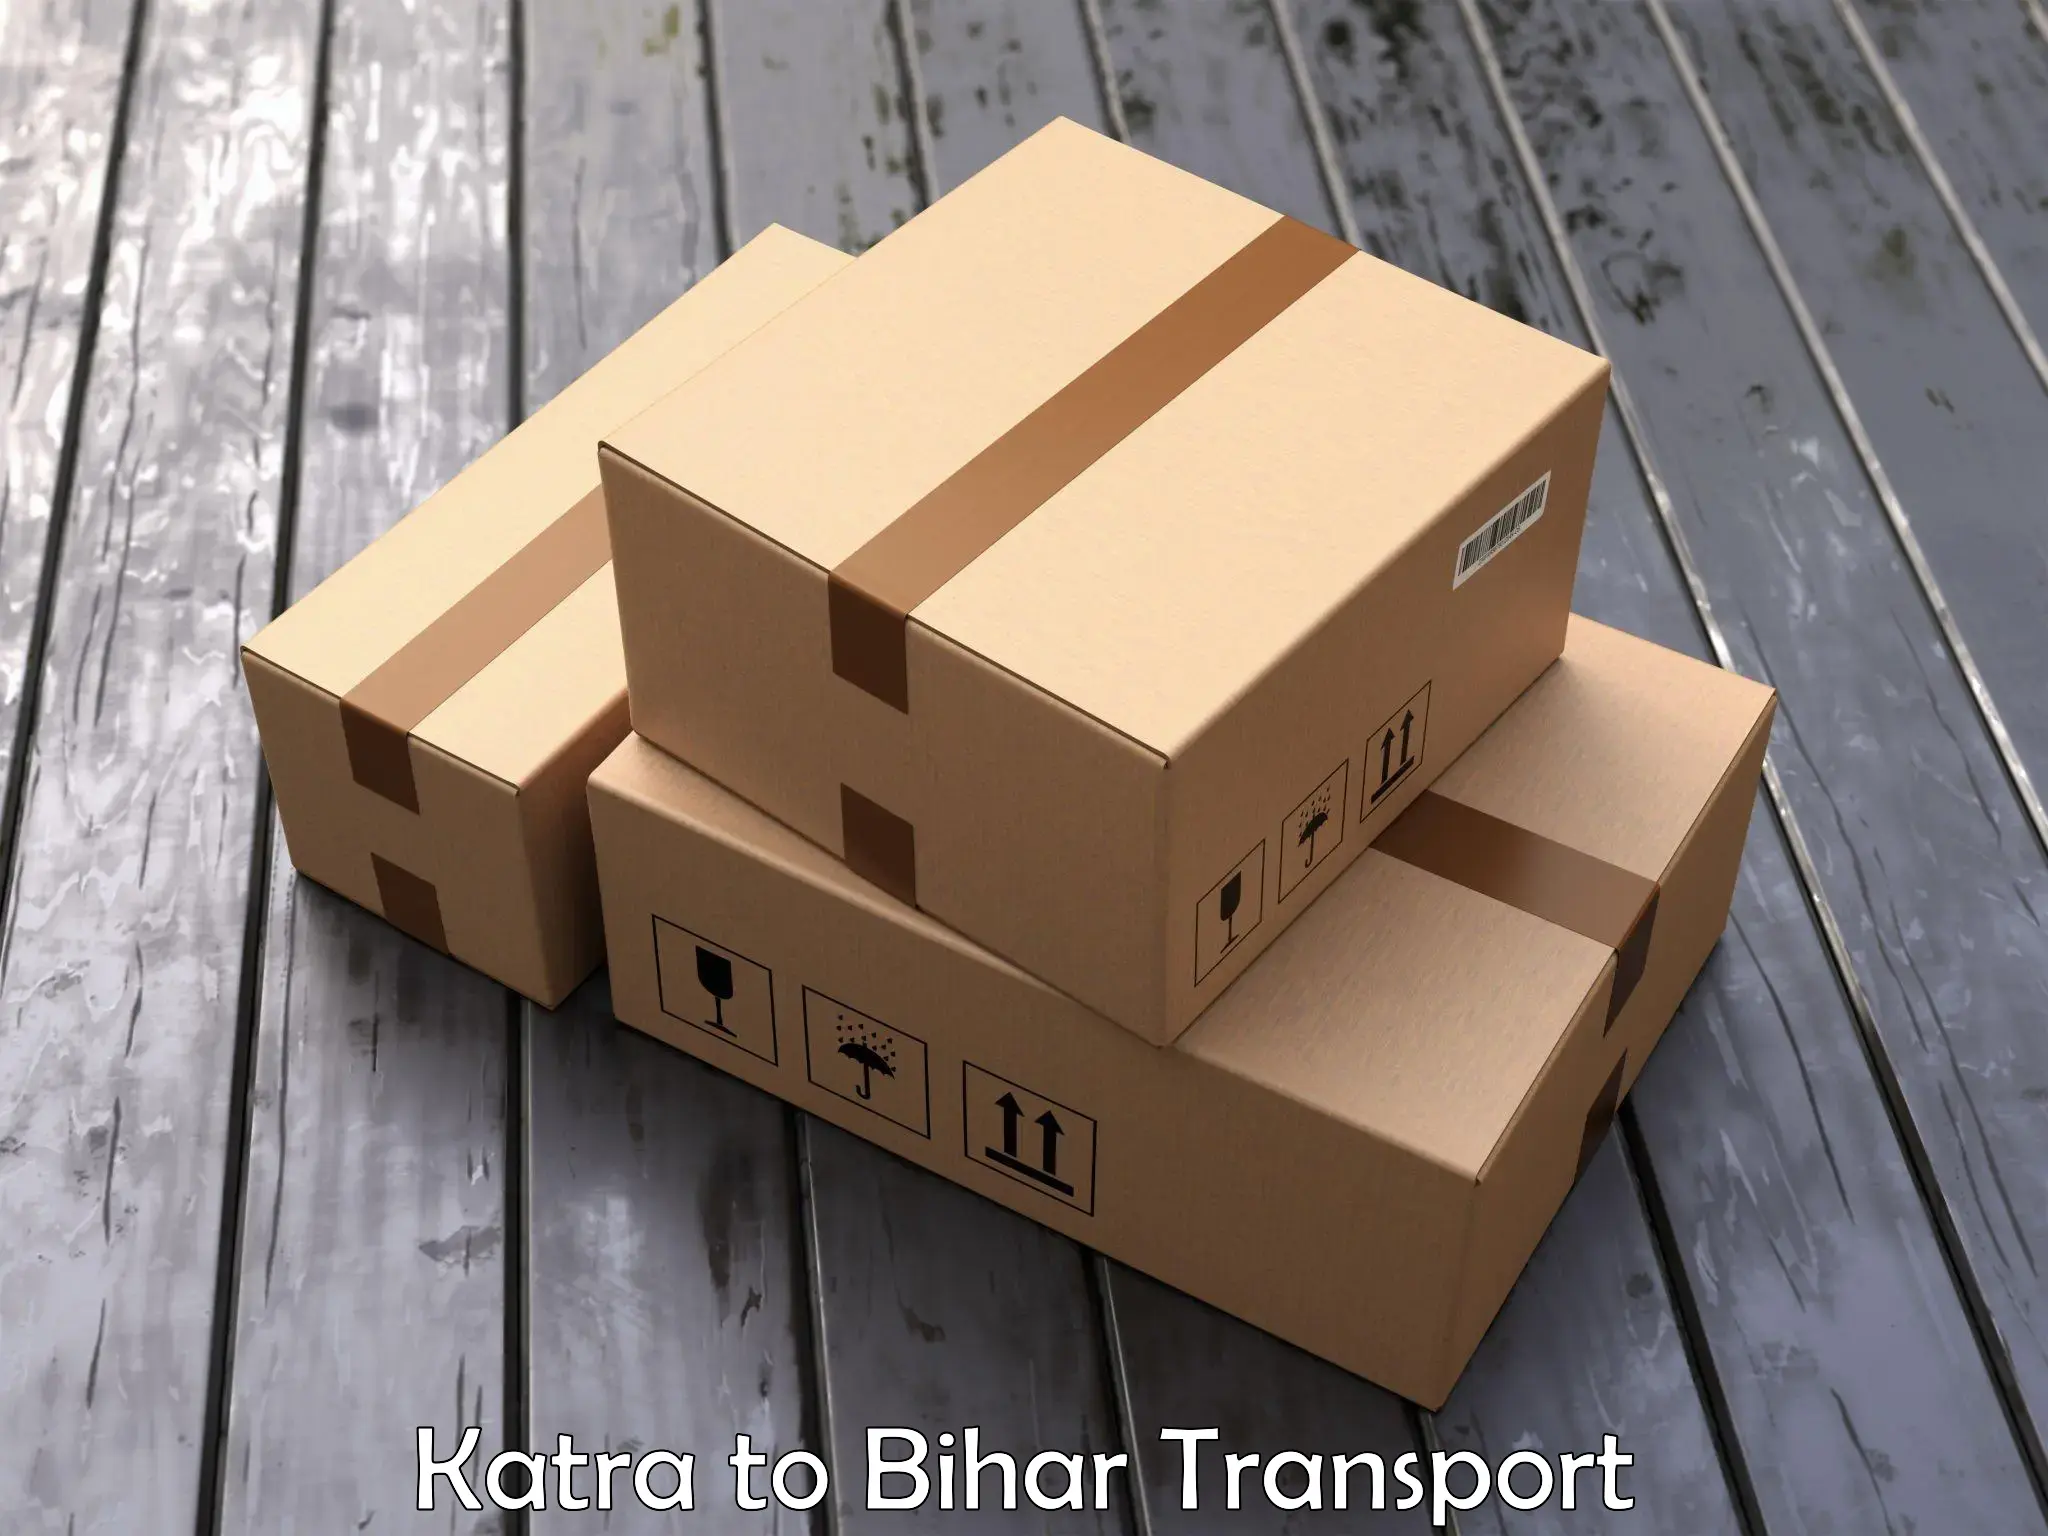 Nearest transport service Katra to Bakhri